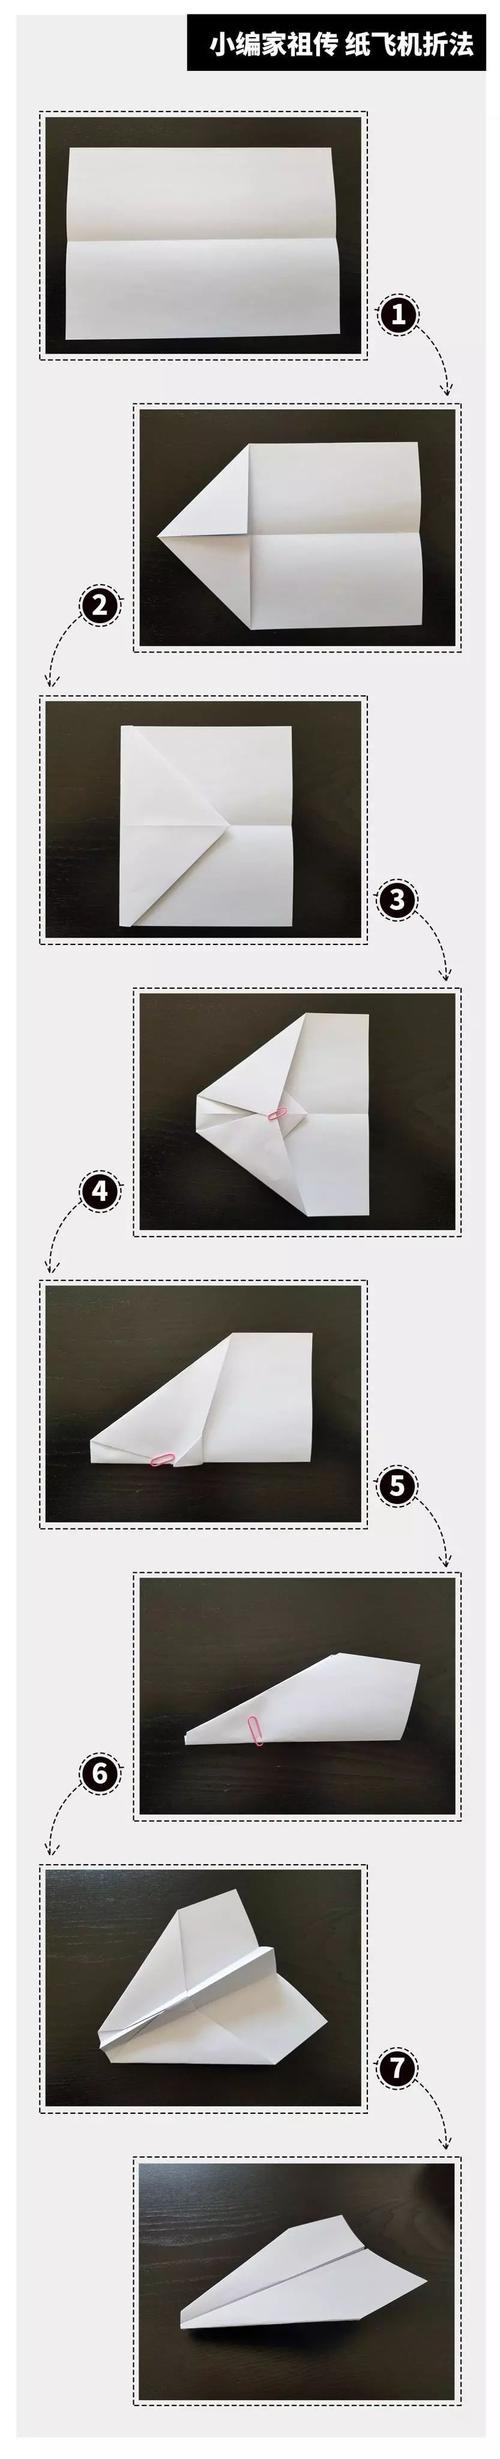 播放纸飞机的方法_播放纸飞机的方法是什么